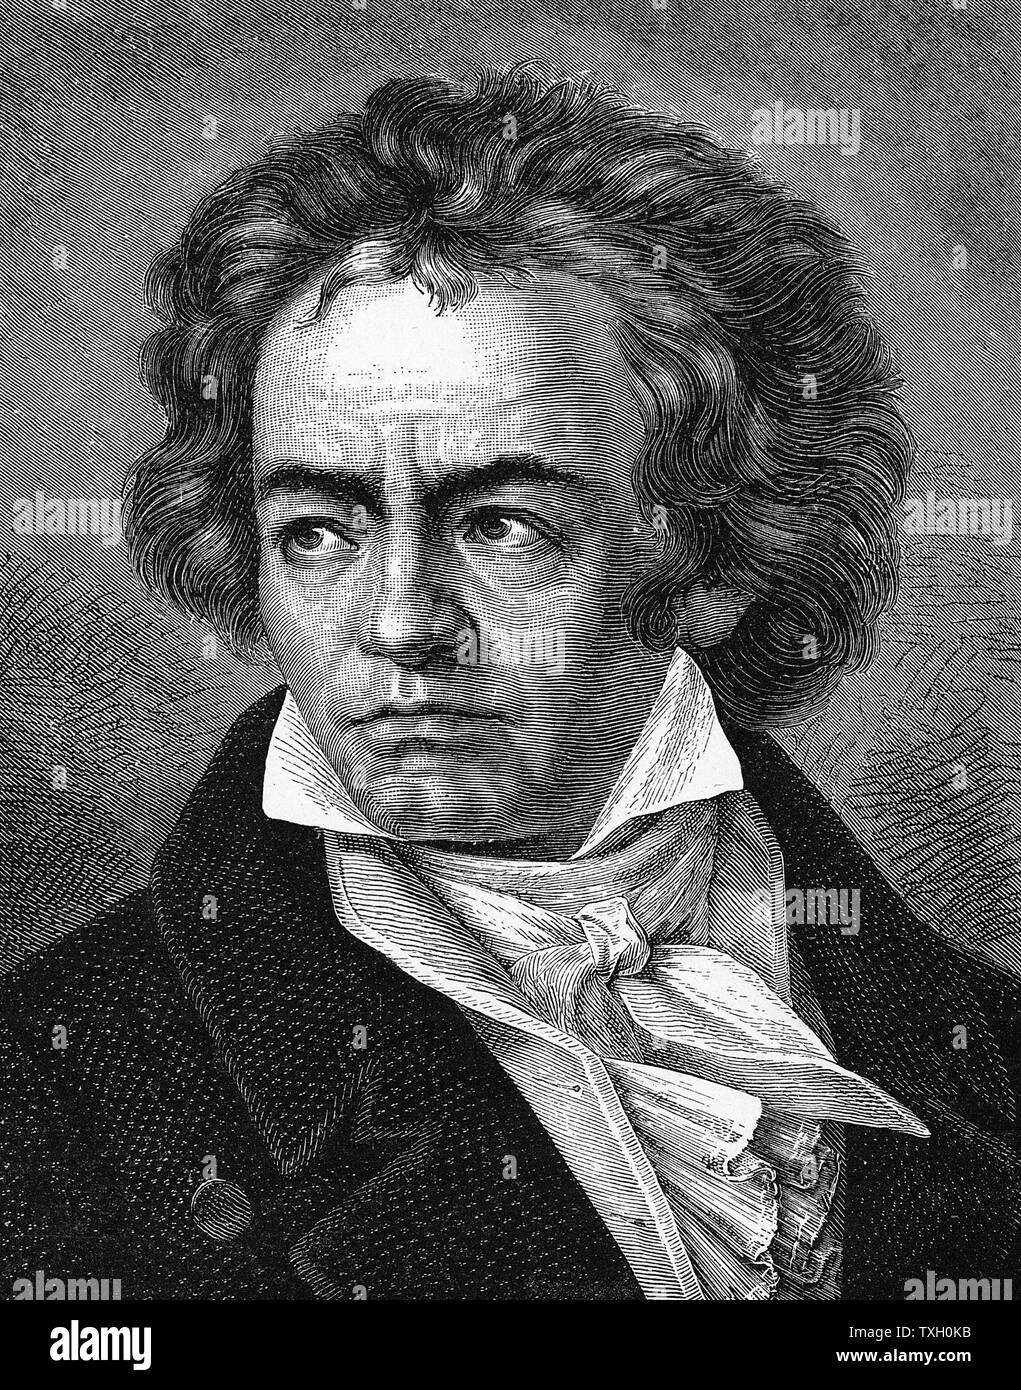 Ludwig van Beethoven (1770-1827) compositeur allemand, un pont entre les styles classique et romantique. La gravure sur bois Banque D'Images